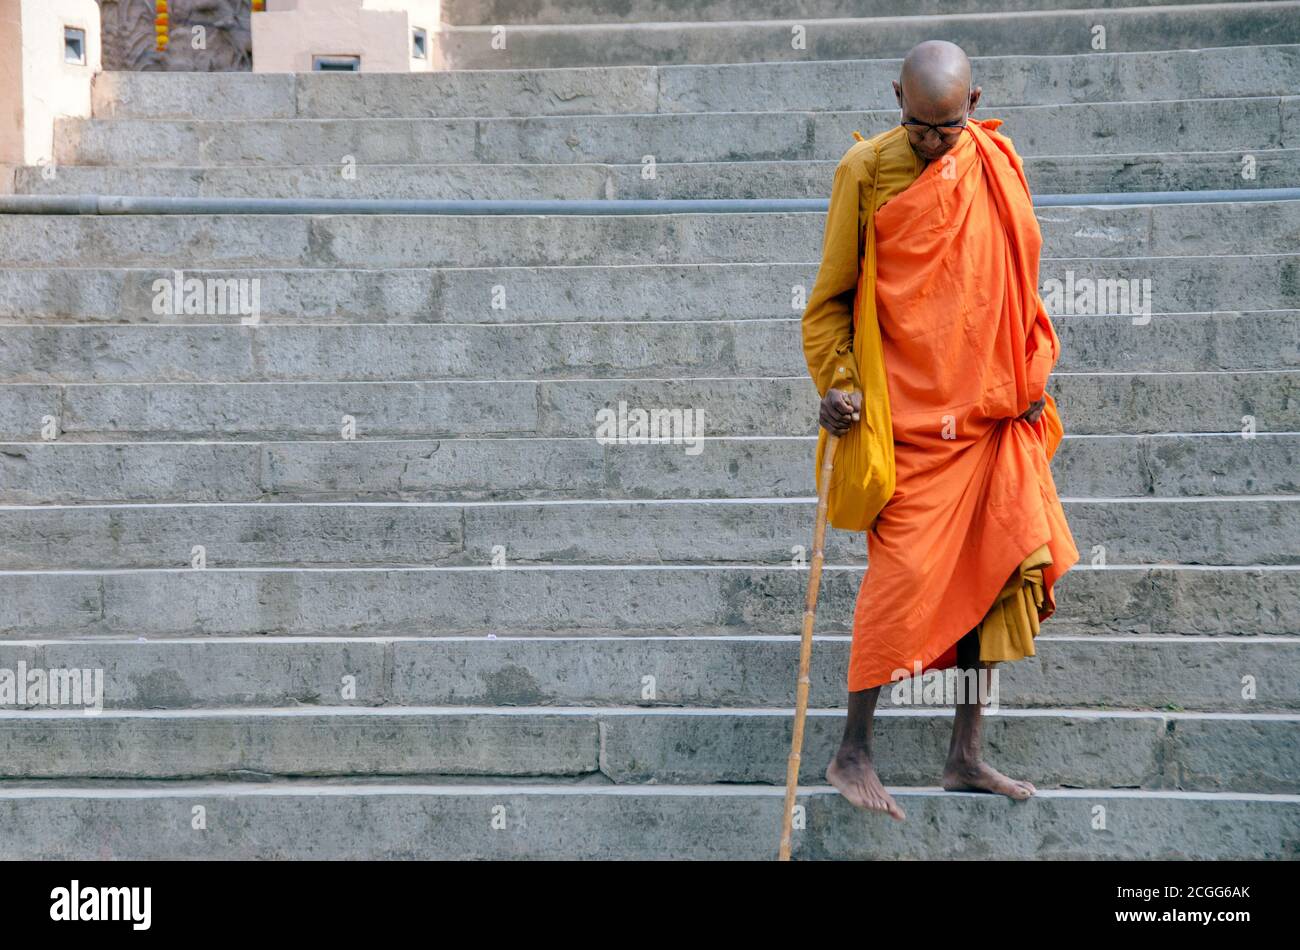 bodh gaya bihar inde le 29 avril 2018 : vieux moine bouddhiste marchant dans les escaliers du complexe de temple de mahabodhi bihar inde. Banque D'Images